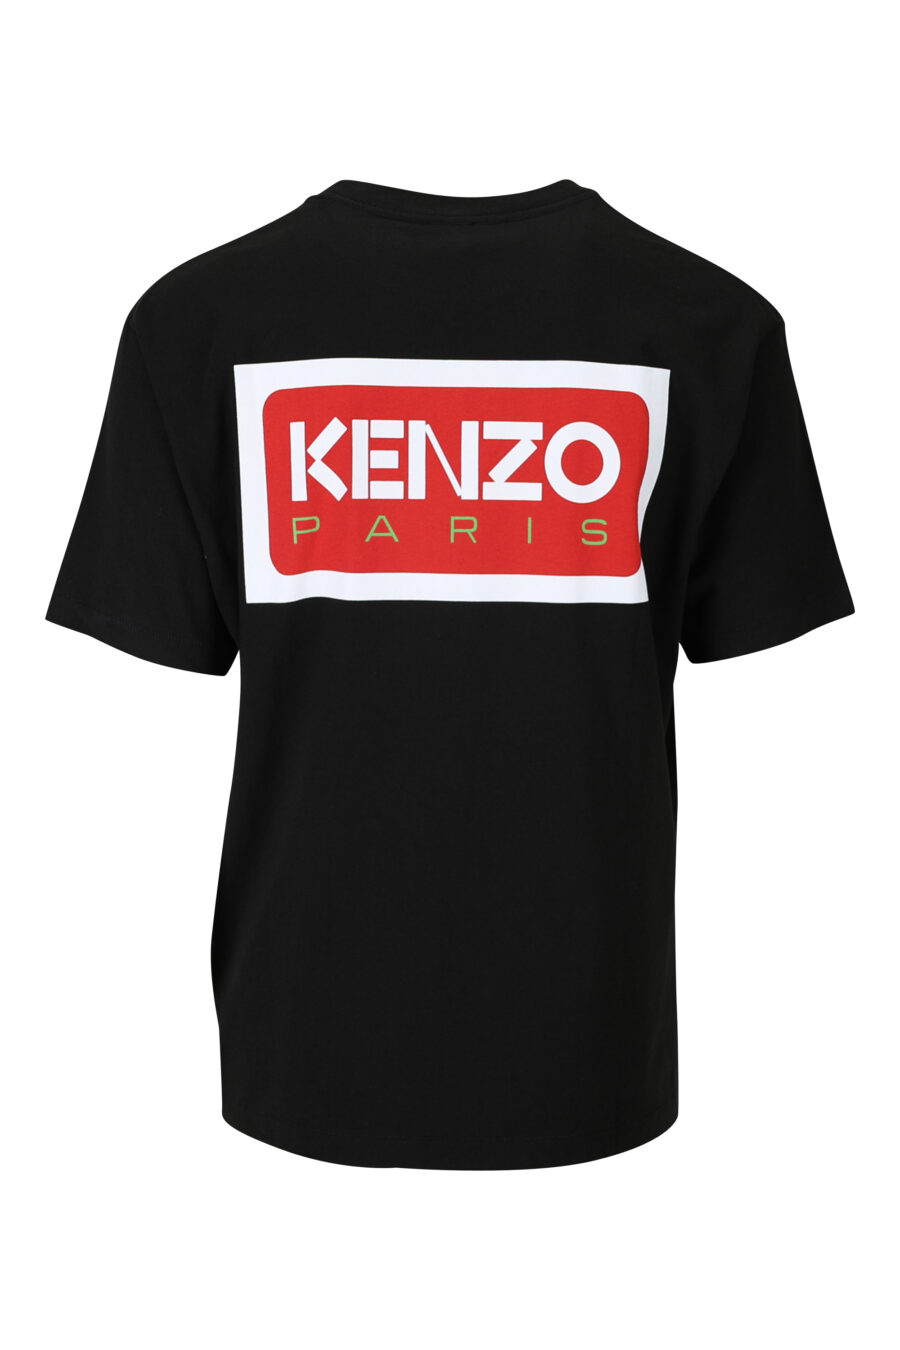 Camiseta negra con logo pequeño "kenzo paris" - 3612230542990 1